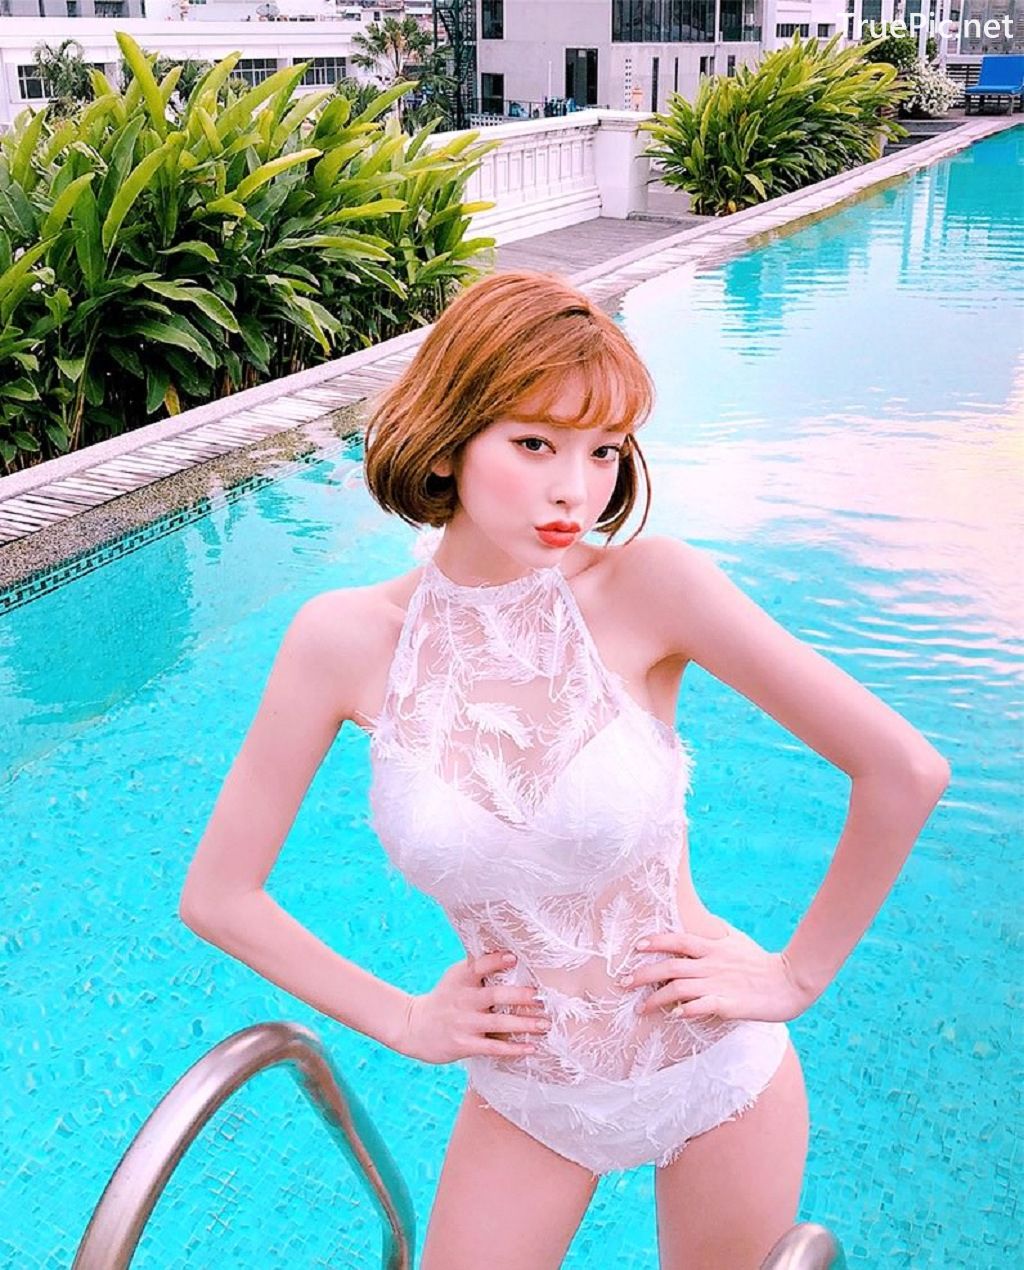 Image-Korean-Fashion-Model-Kang-Tae-Ri-Album-Summer-In-Bangkok-TruePic.net- Picture-29